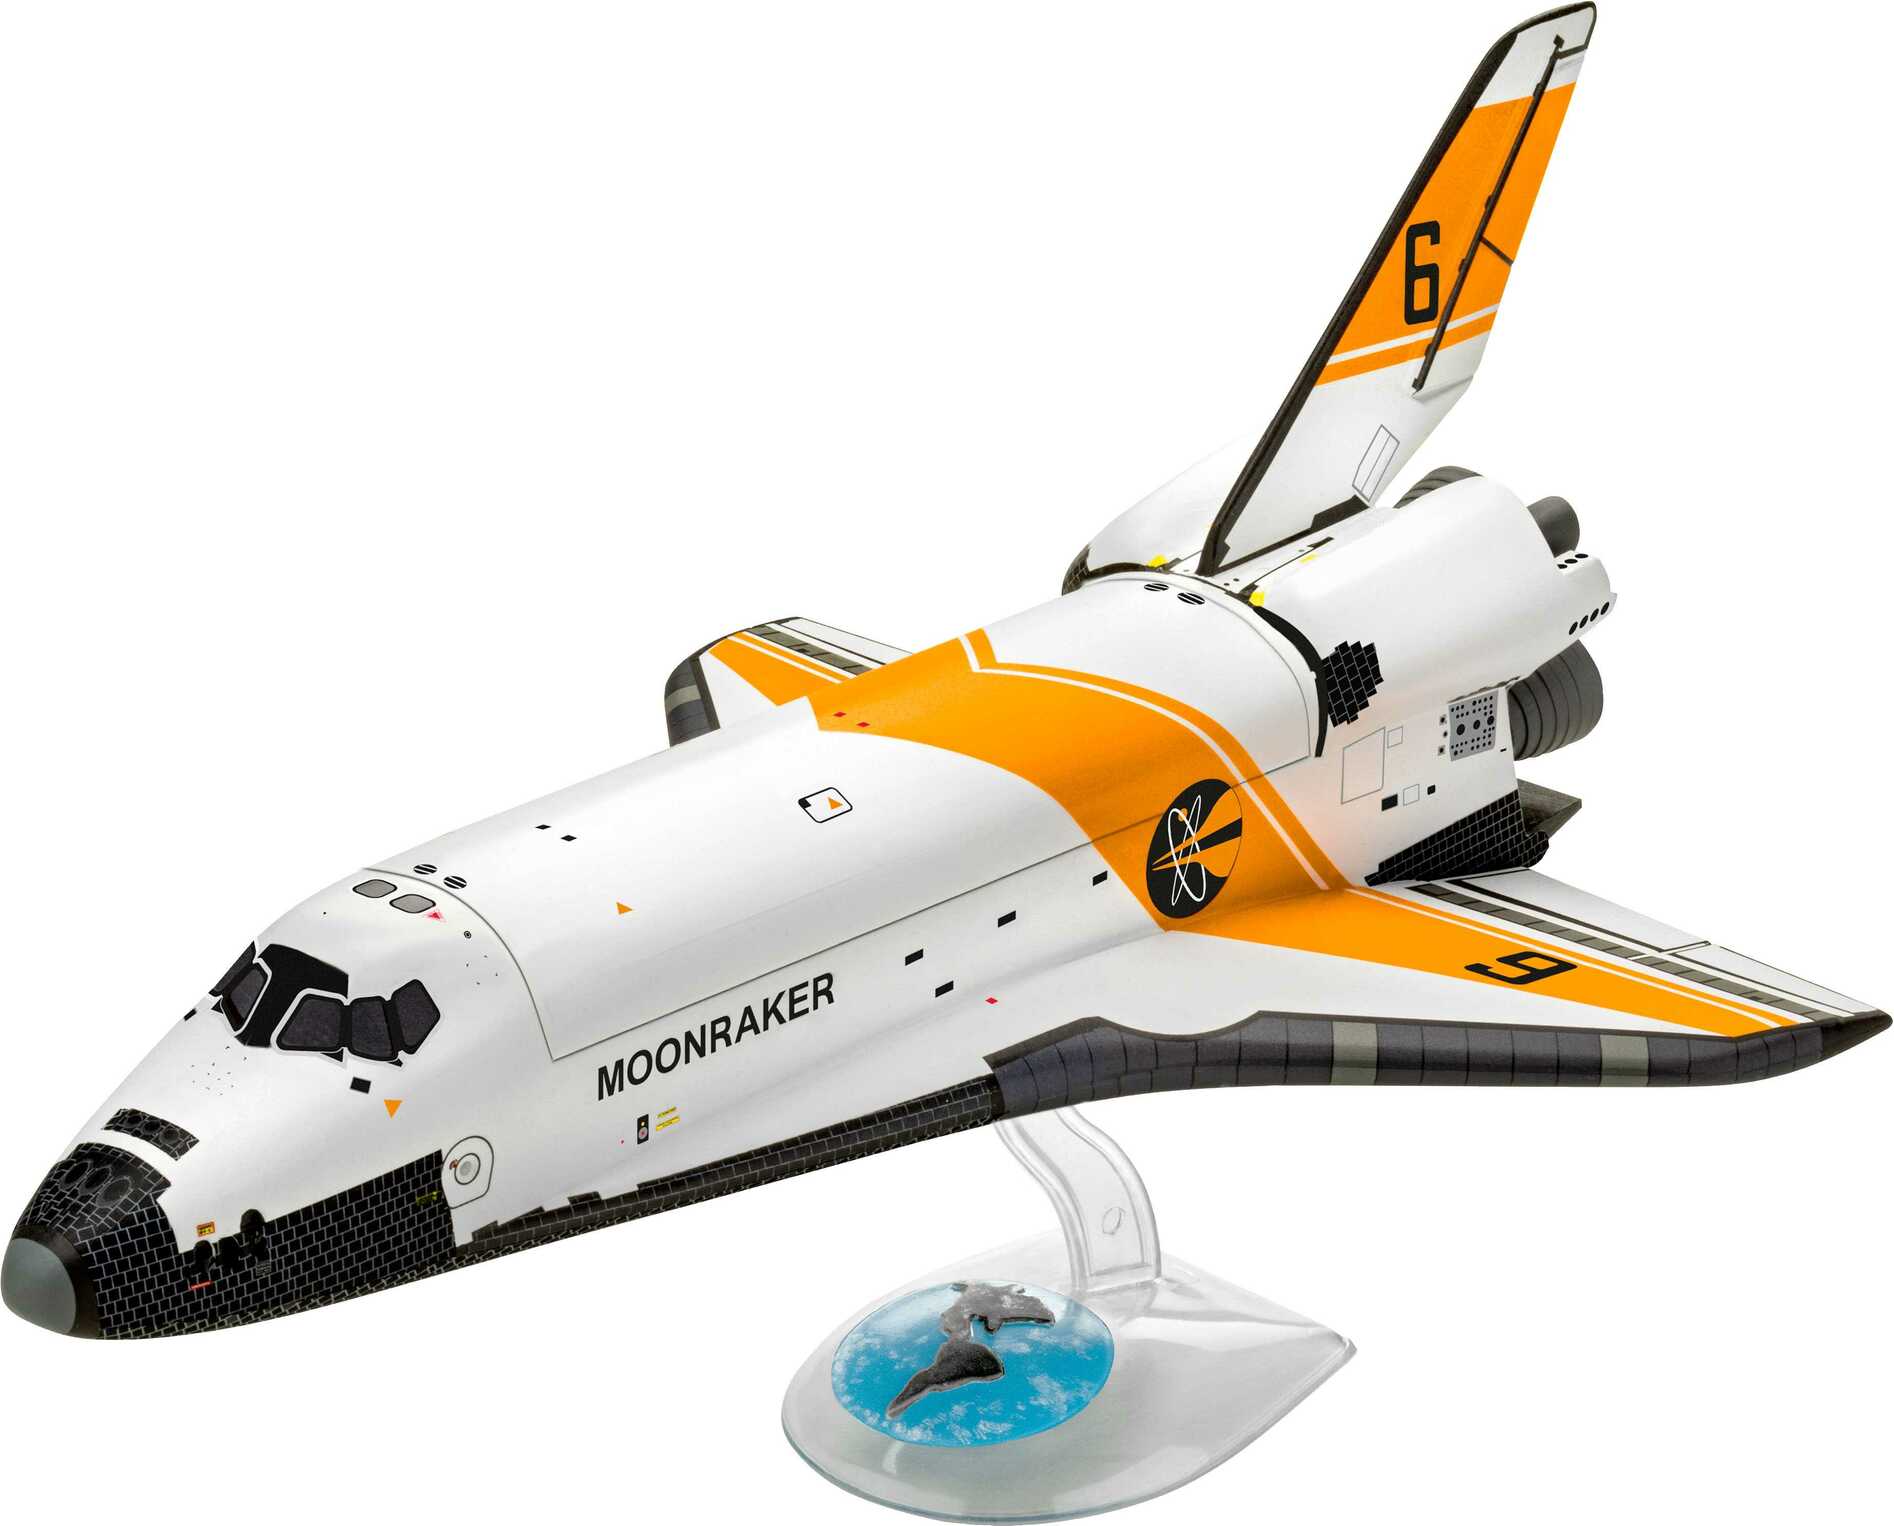 Gift-Set James Bond 05665 - "Moonraker" Space Shuttle (1:144)